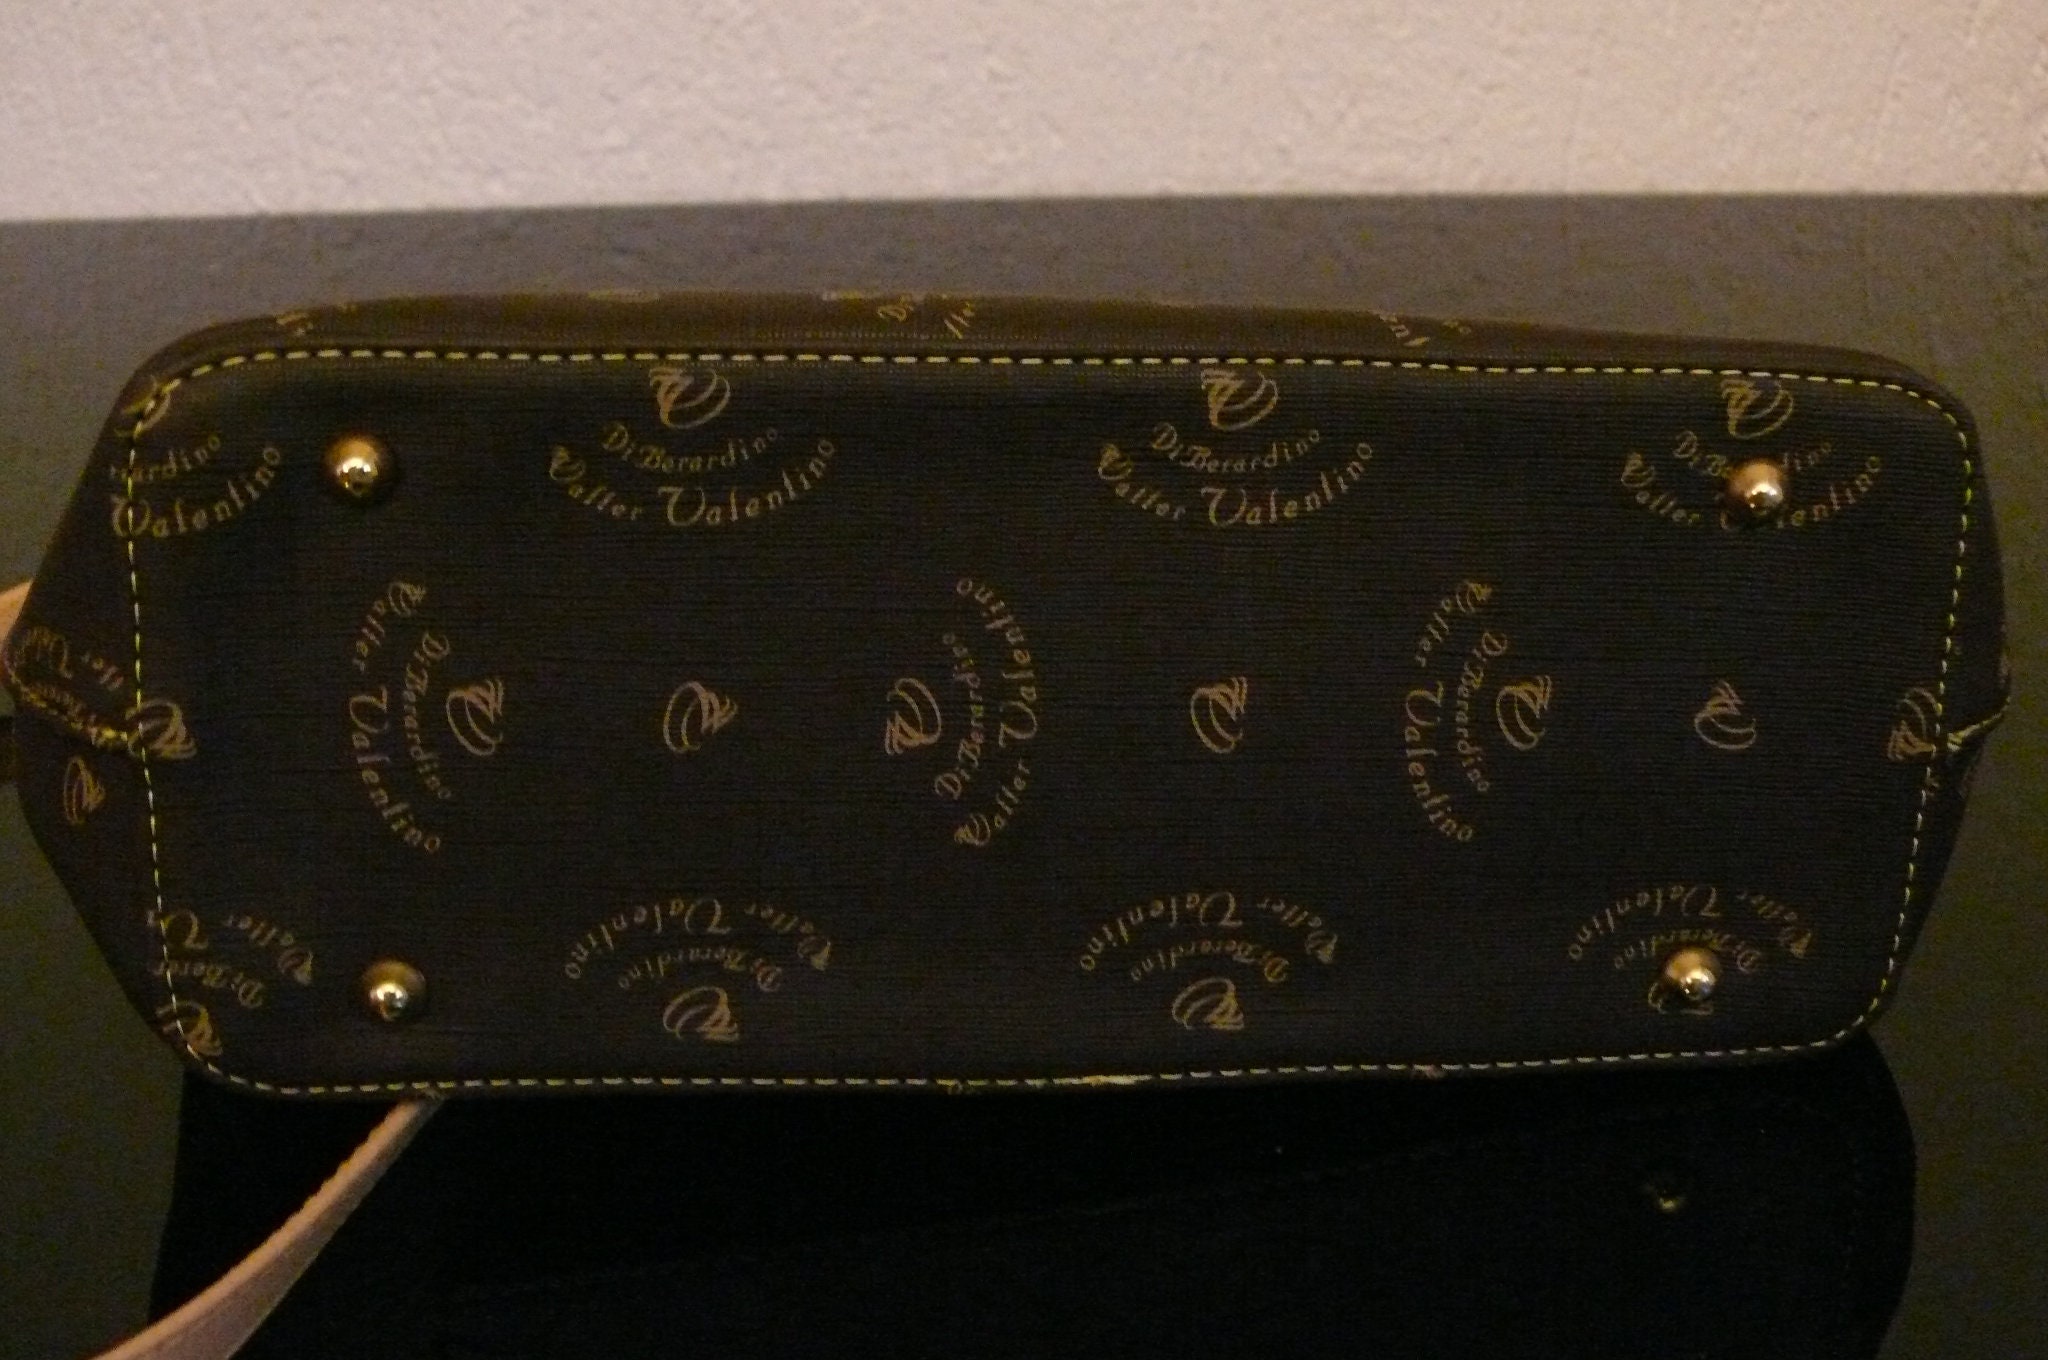 Dibardino VALENTINO DESIGNER Handbag .made in Italy